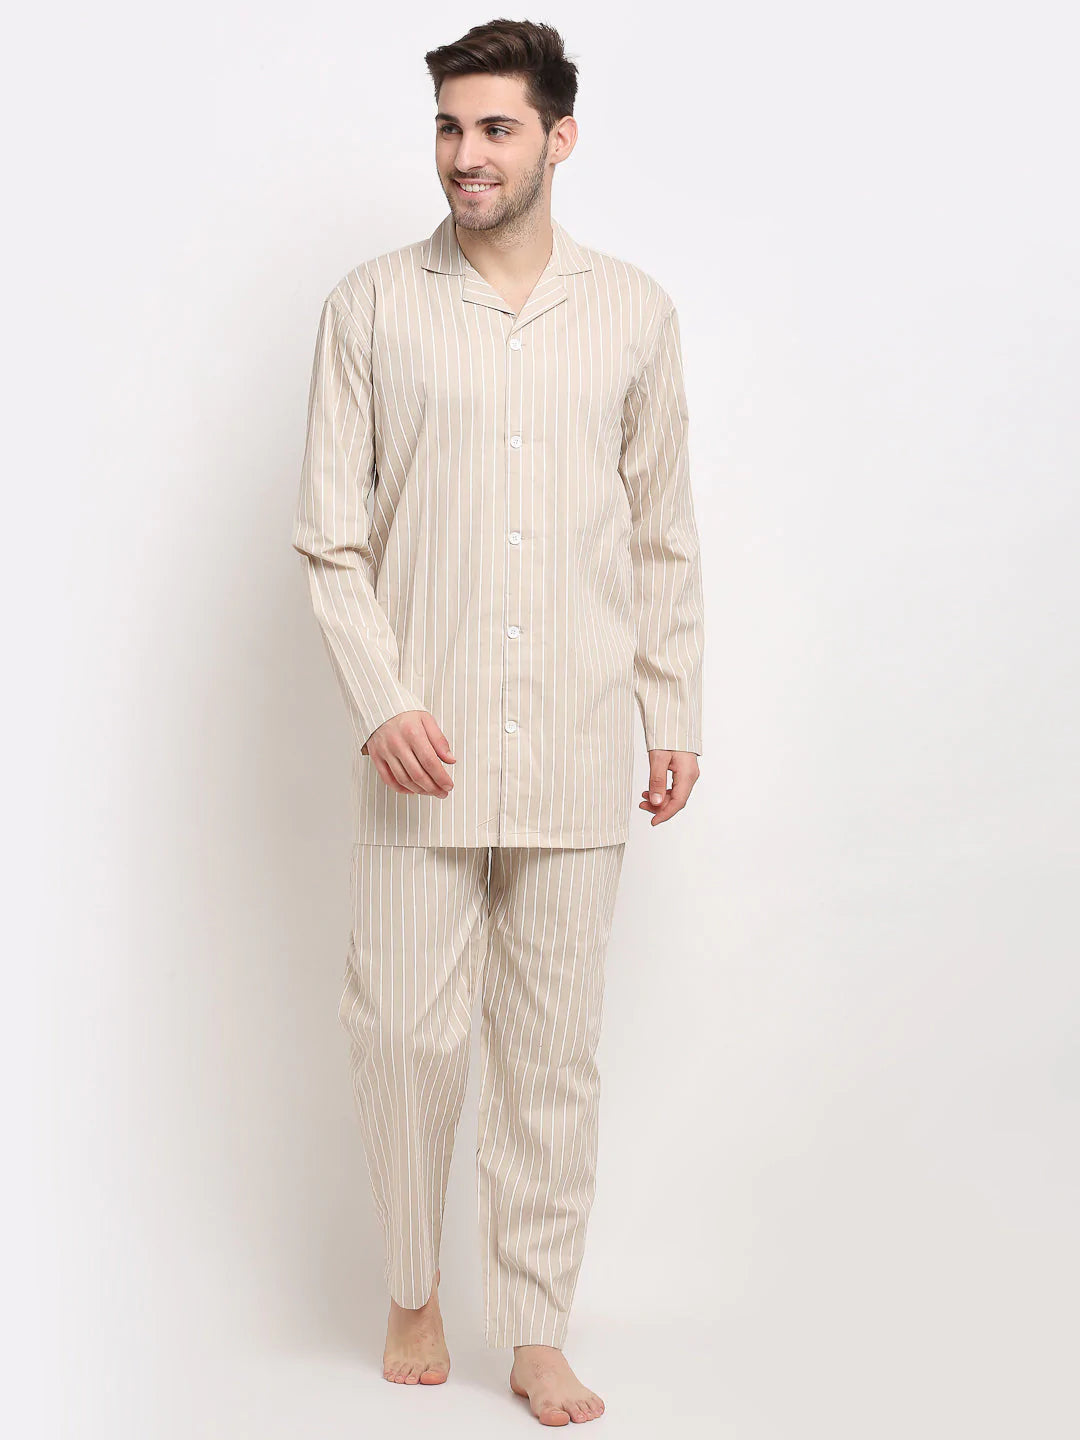 Jainish Men's Cream Cotton Striped Night Suits ( GNS 002Cream )